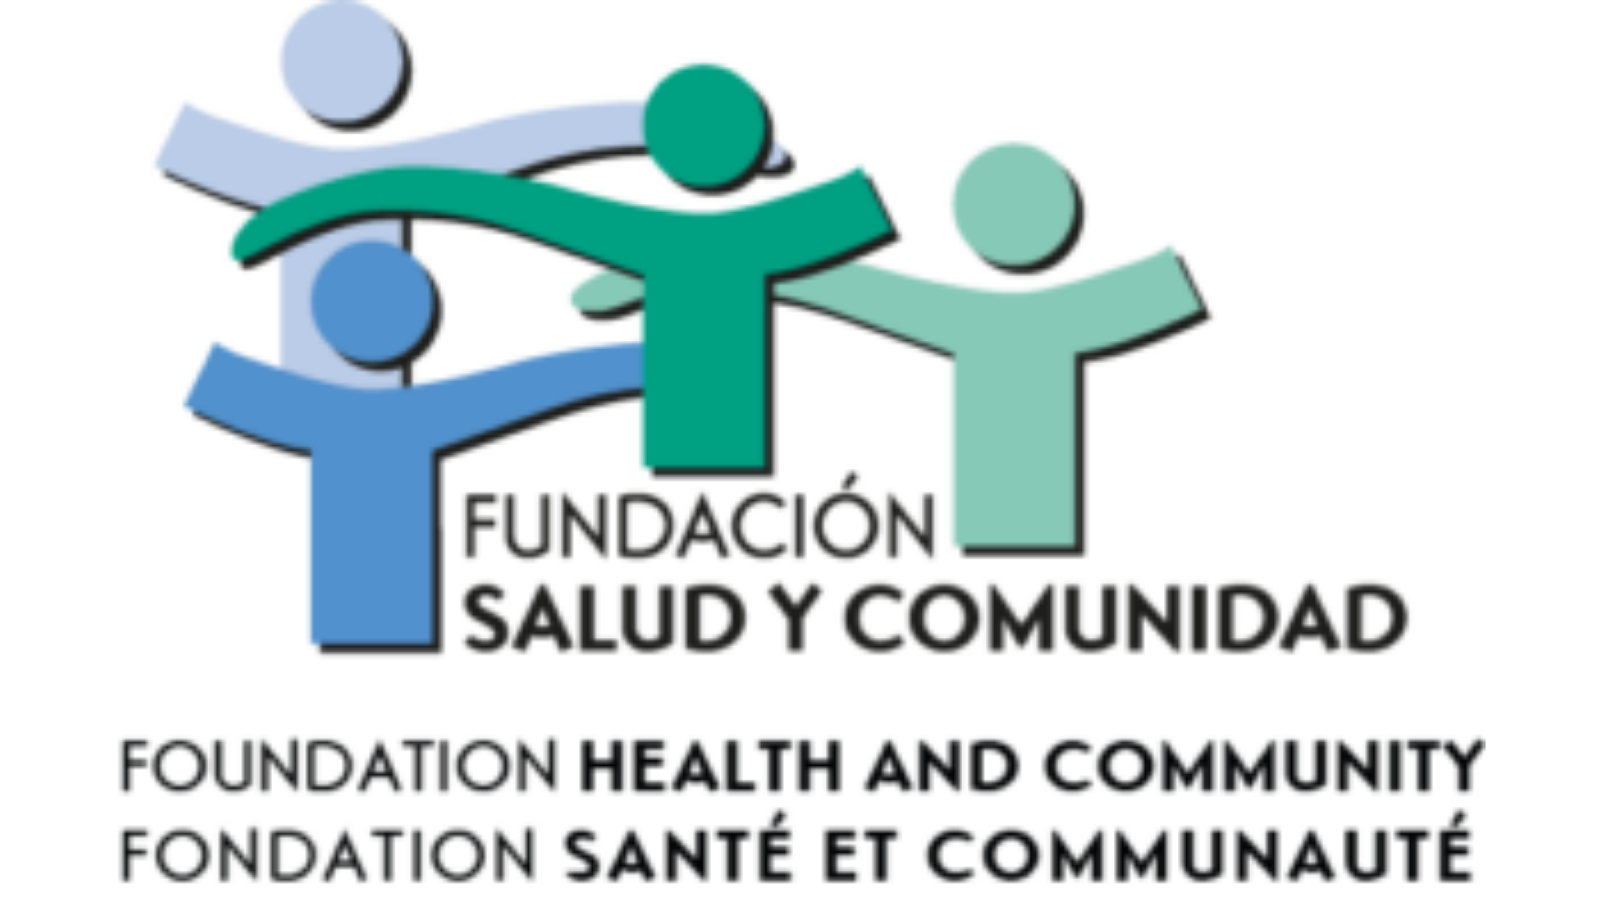 Fundacion Salud y Comunidad